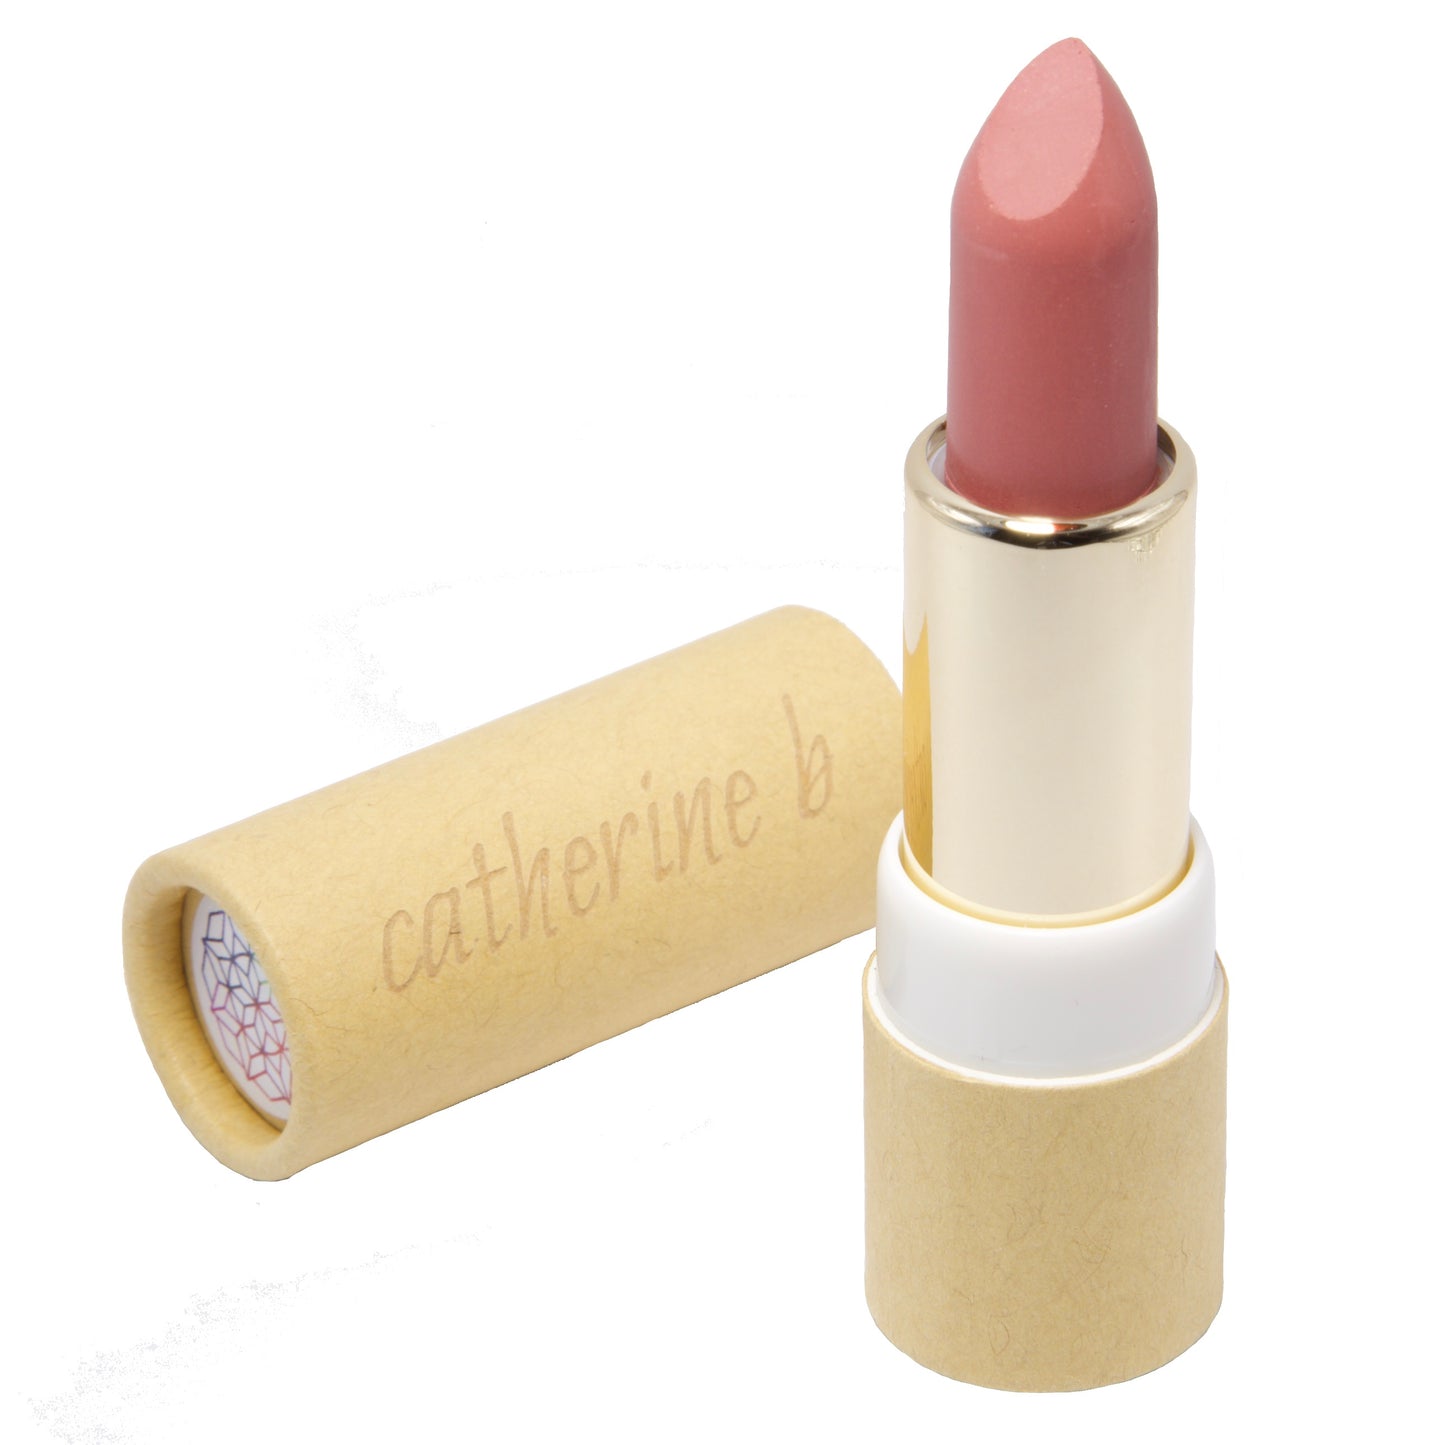 Allure Organic Nude Dusky Pink Lipstick